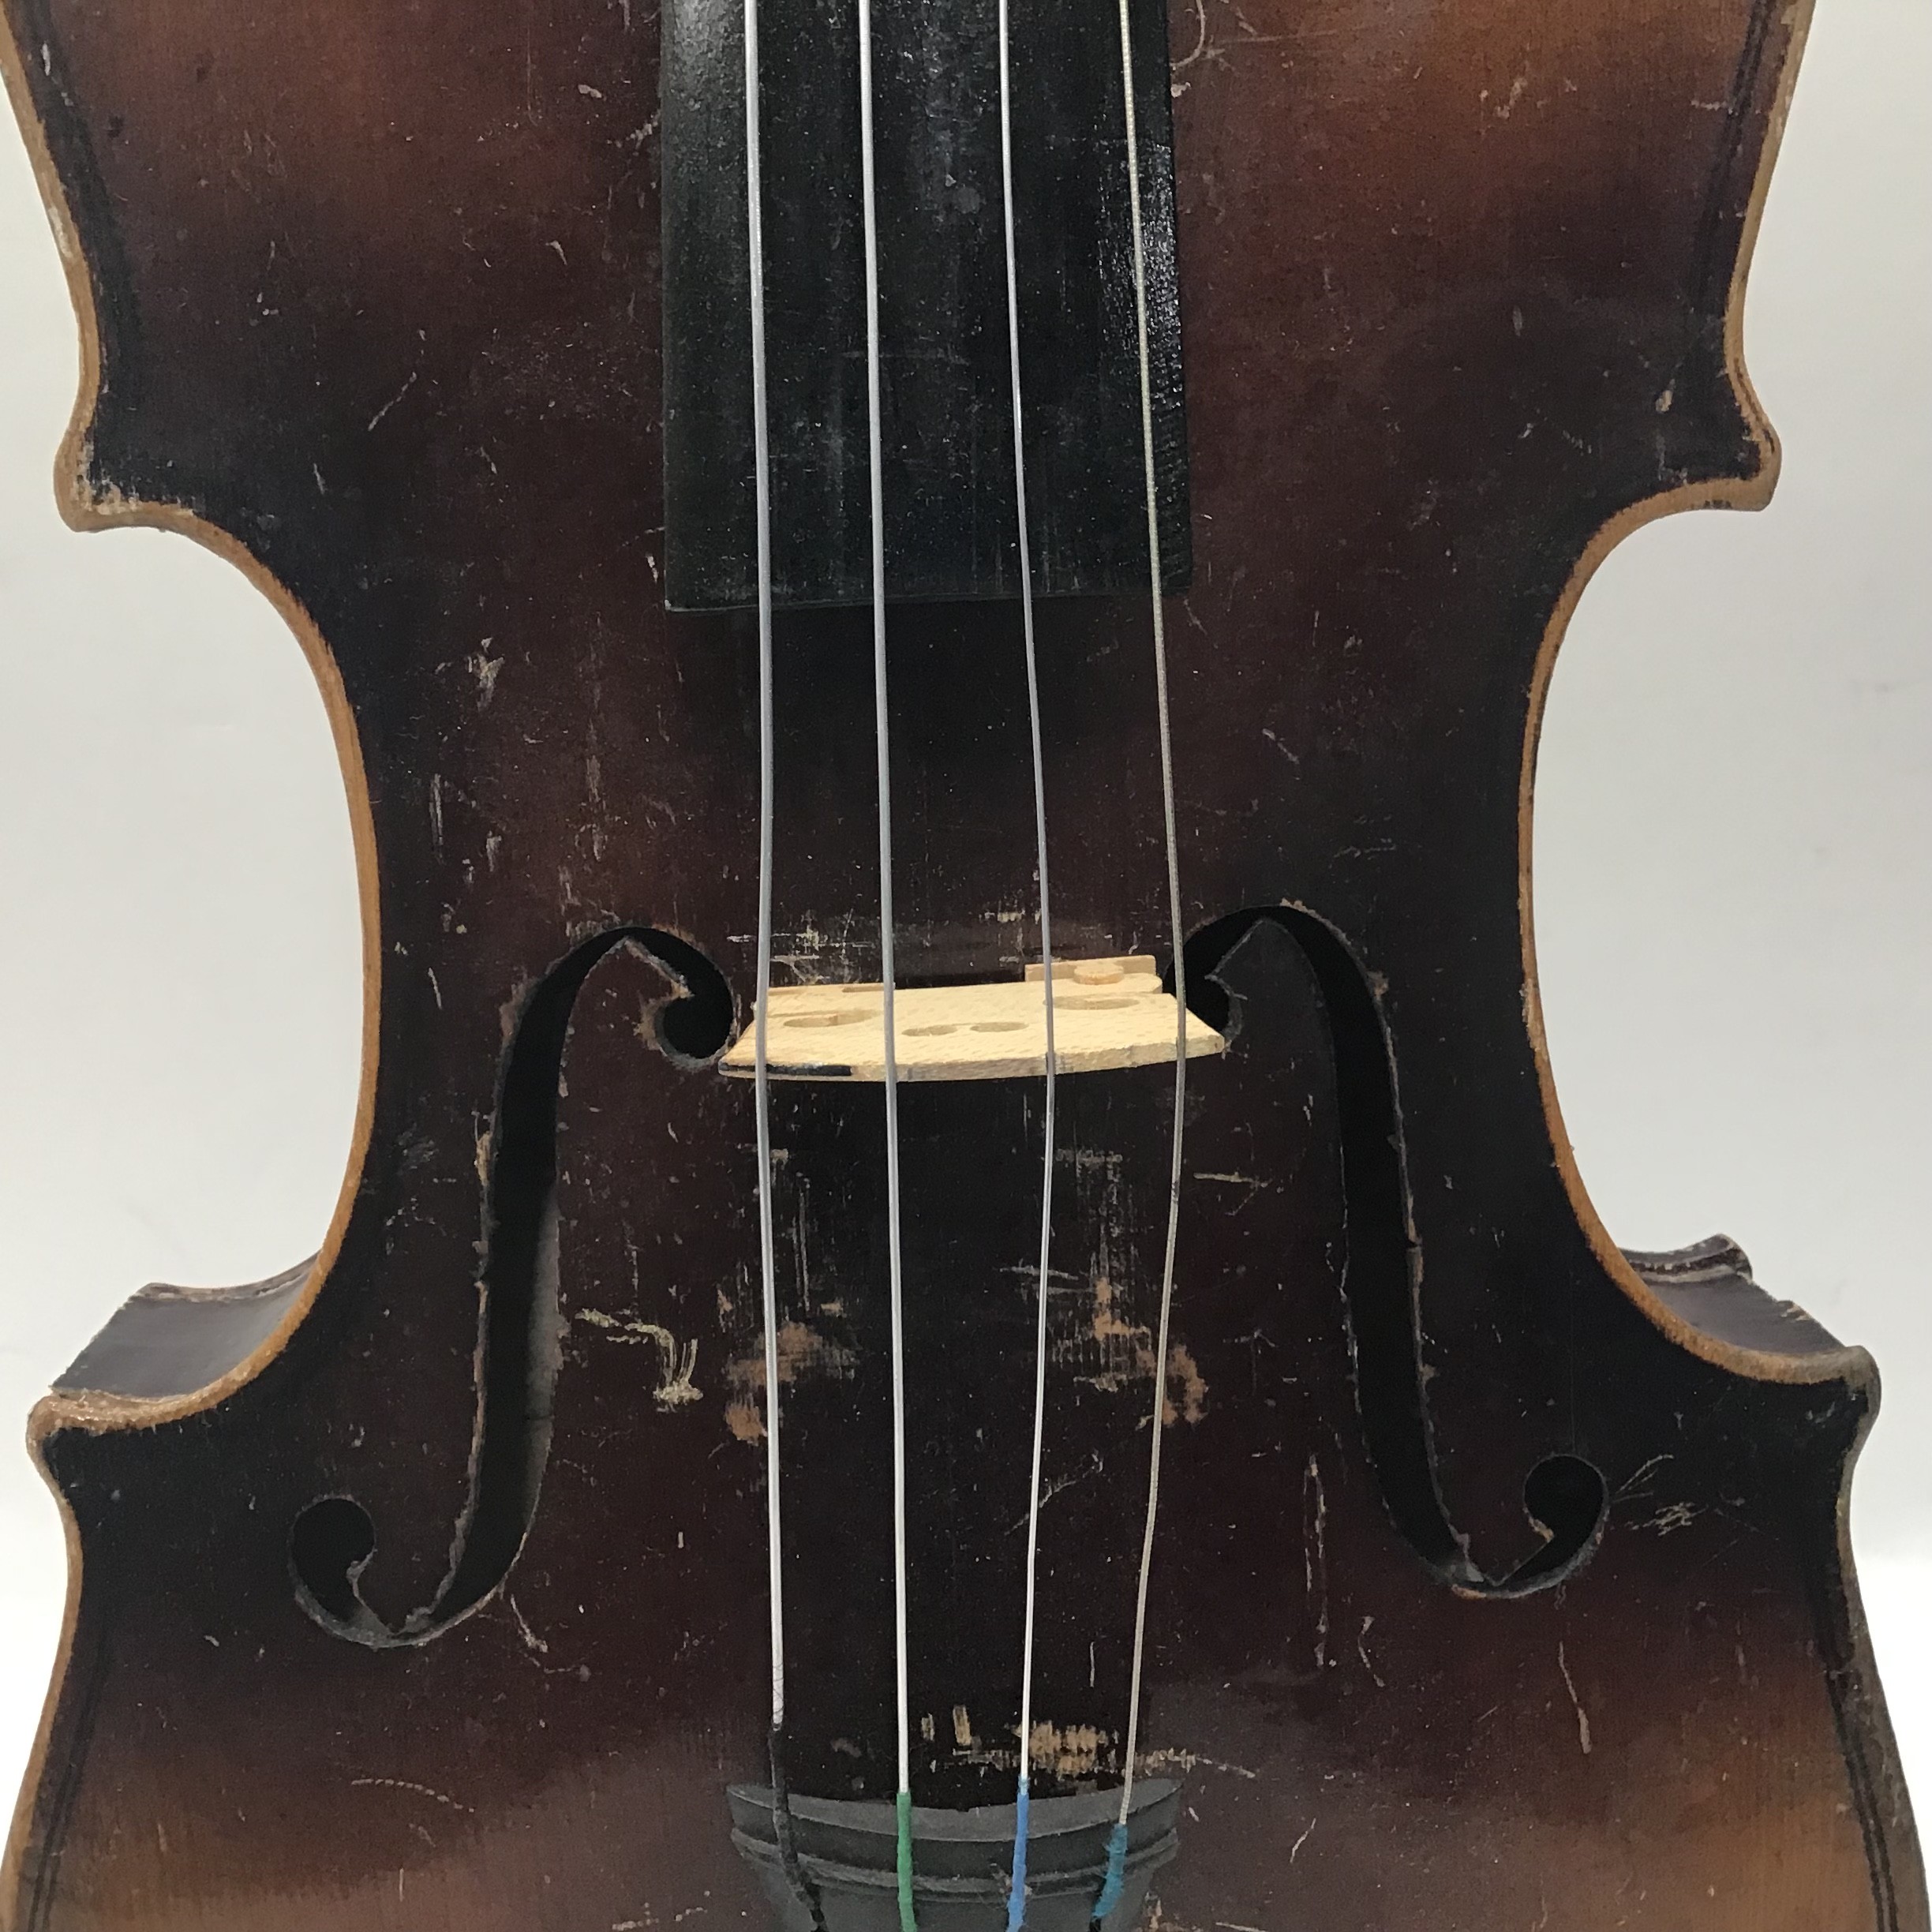 Ernst Heinrich Roth Violin 38cm body 60cm total length - Image 3 of 6